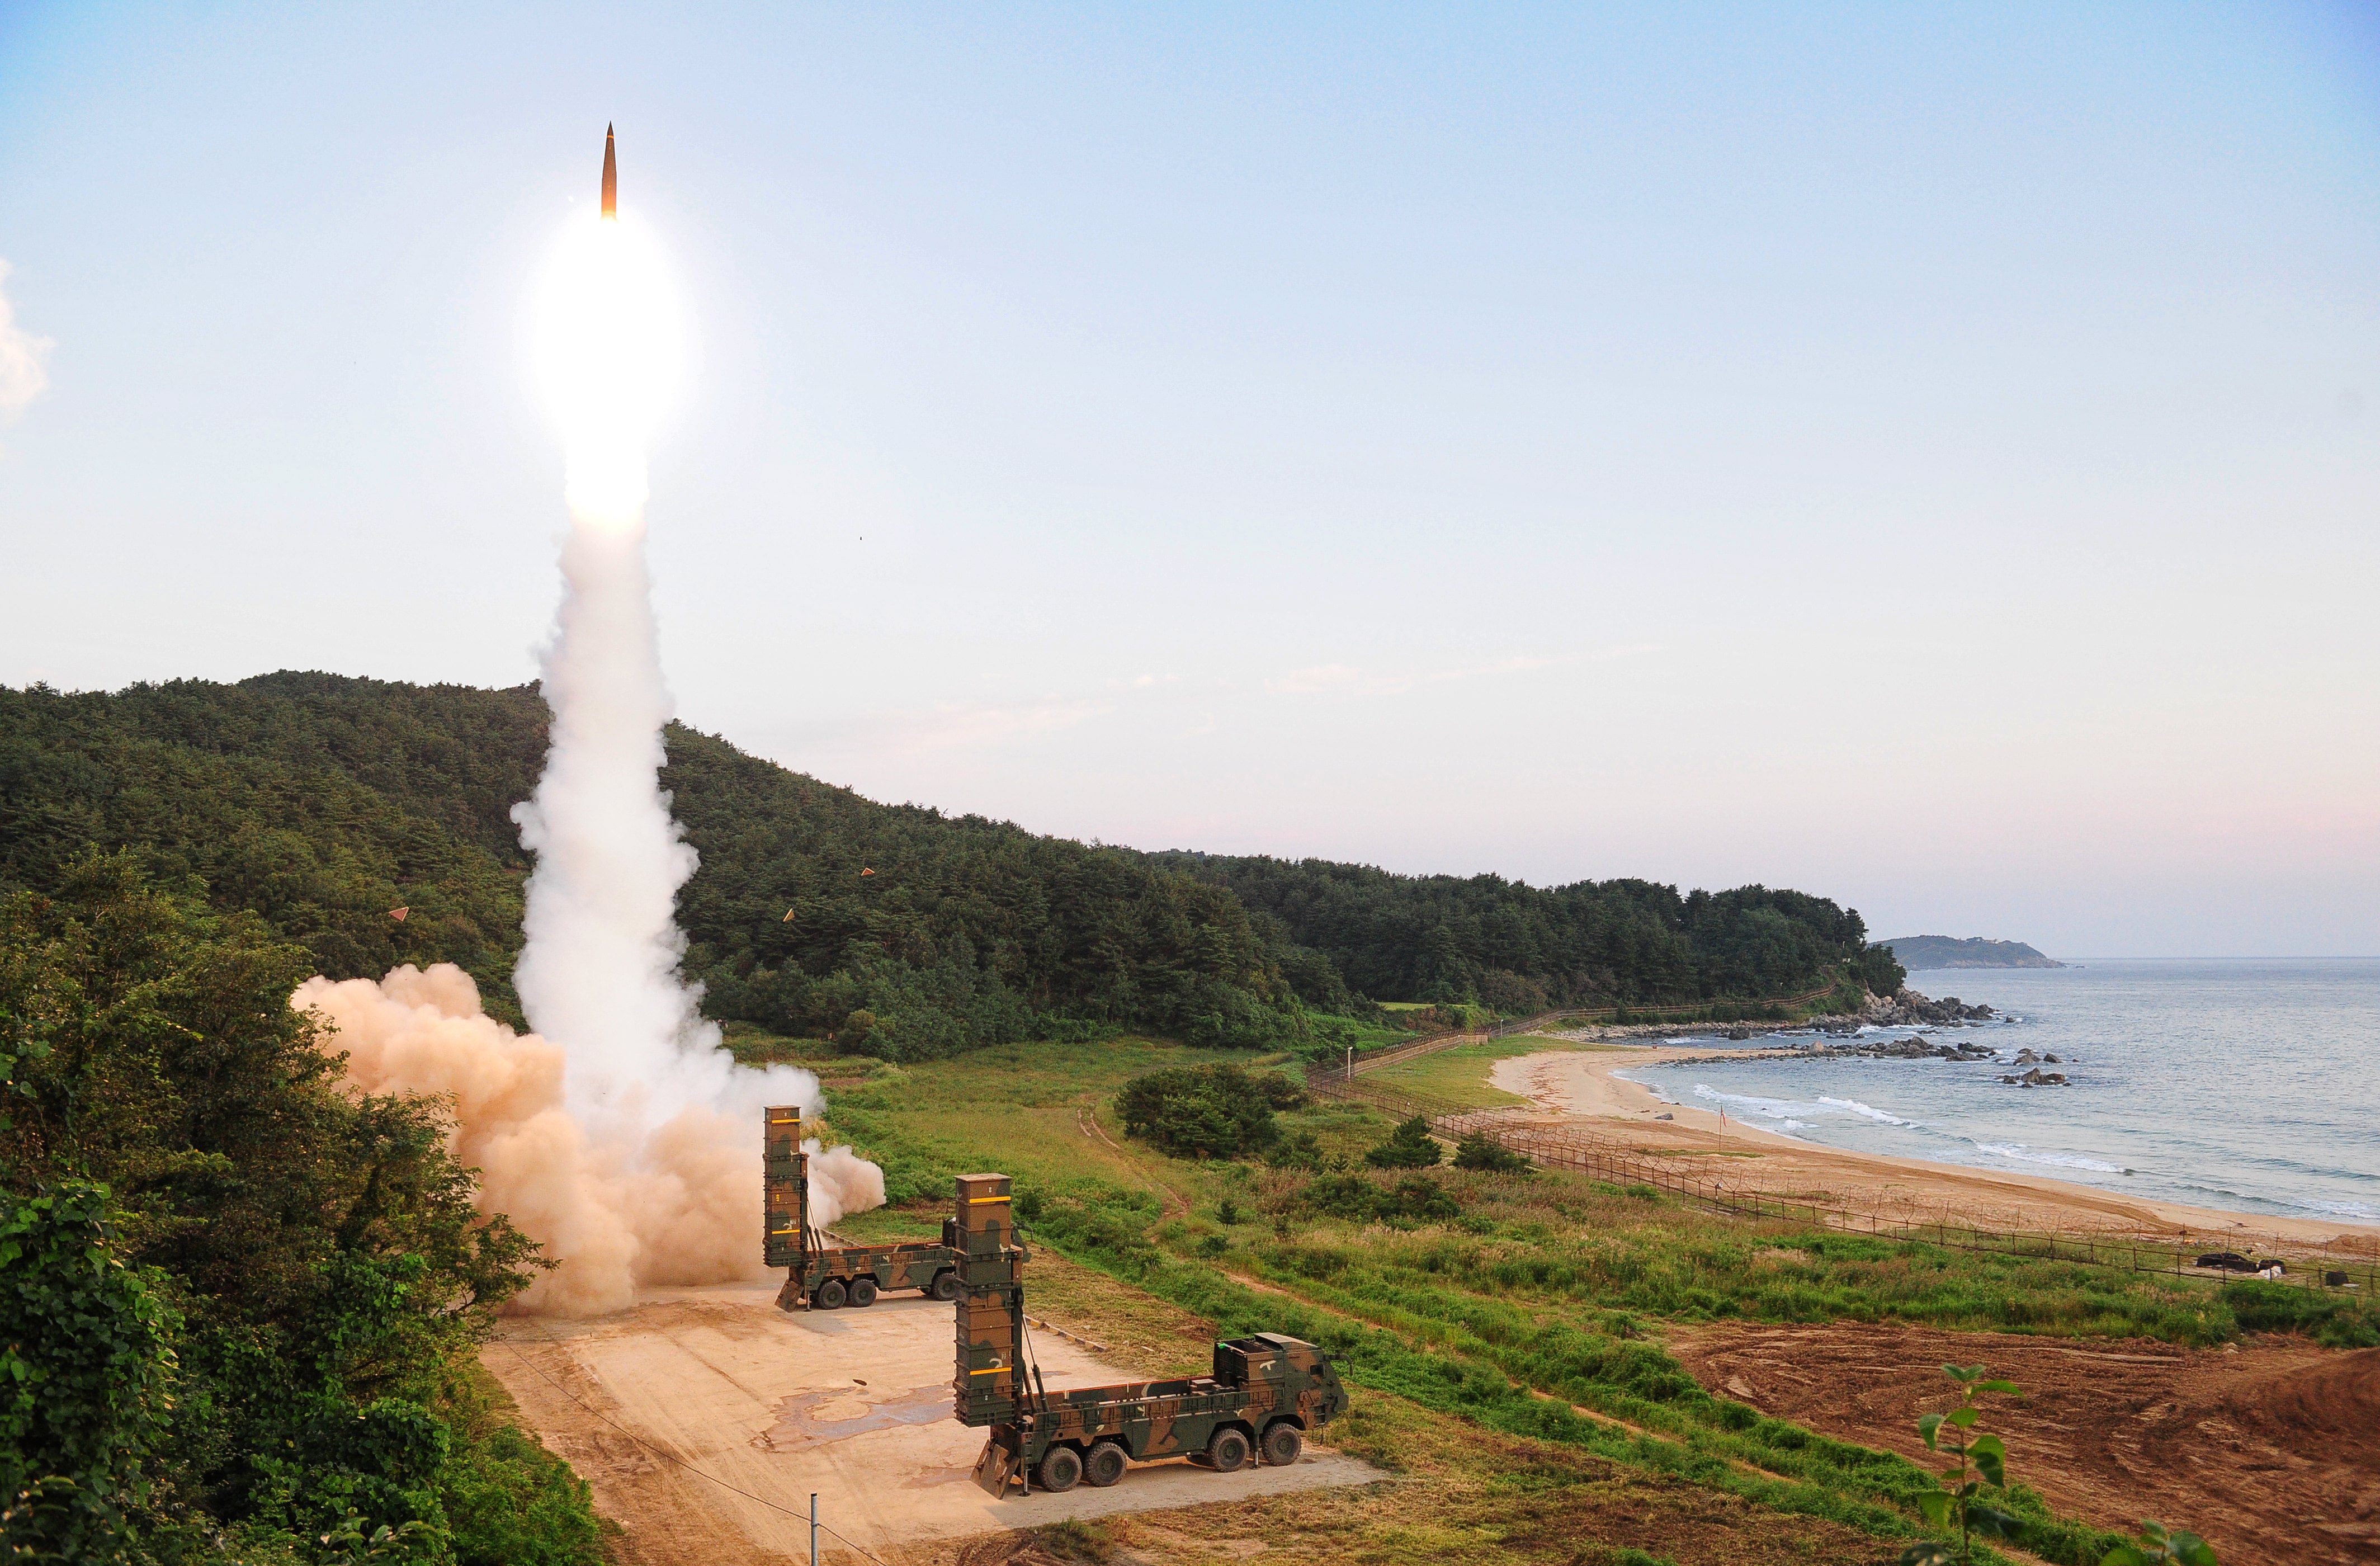 Южнокорейската армия симулира атака срещу изстрелване на севернокорейско ядрено оръжие. При демонстративните стрелби са поразени „избраните цели в Японско море” на разстояние, еквивалентно на това до севернокорейския полигон. Използвани са южнокорейски балистични ракети и изтребители Ф-15K.